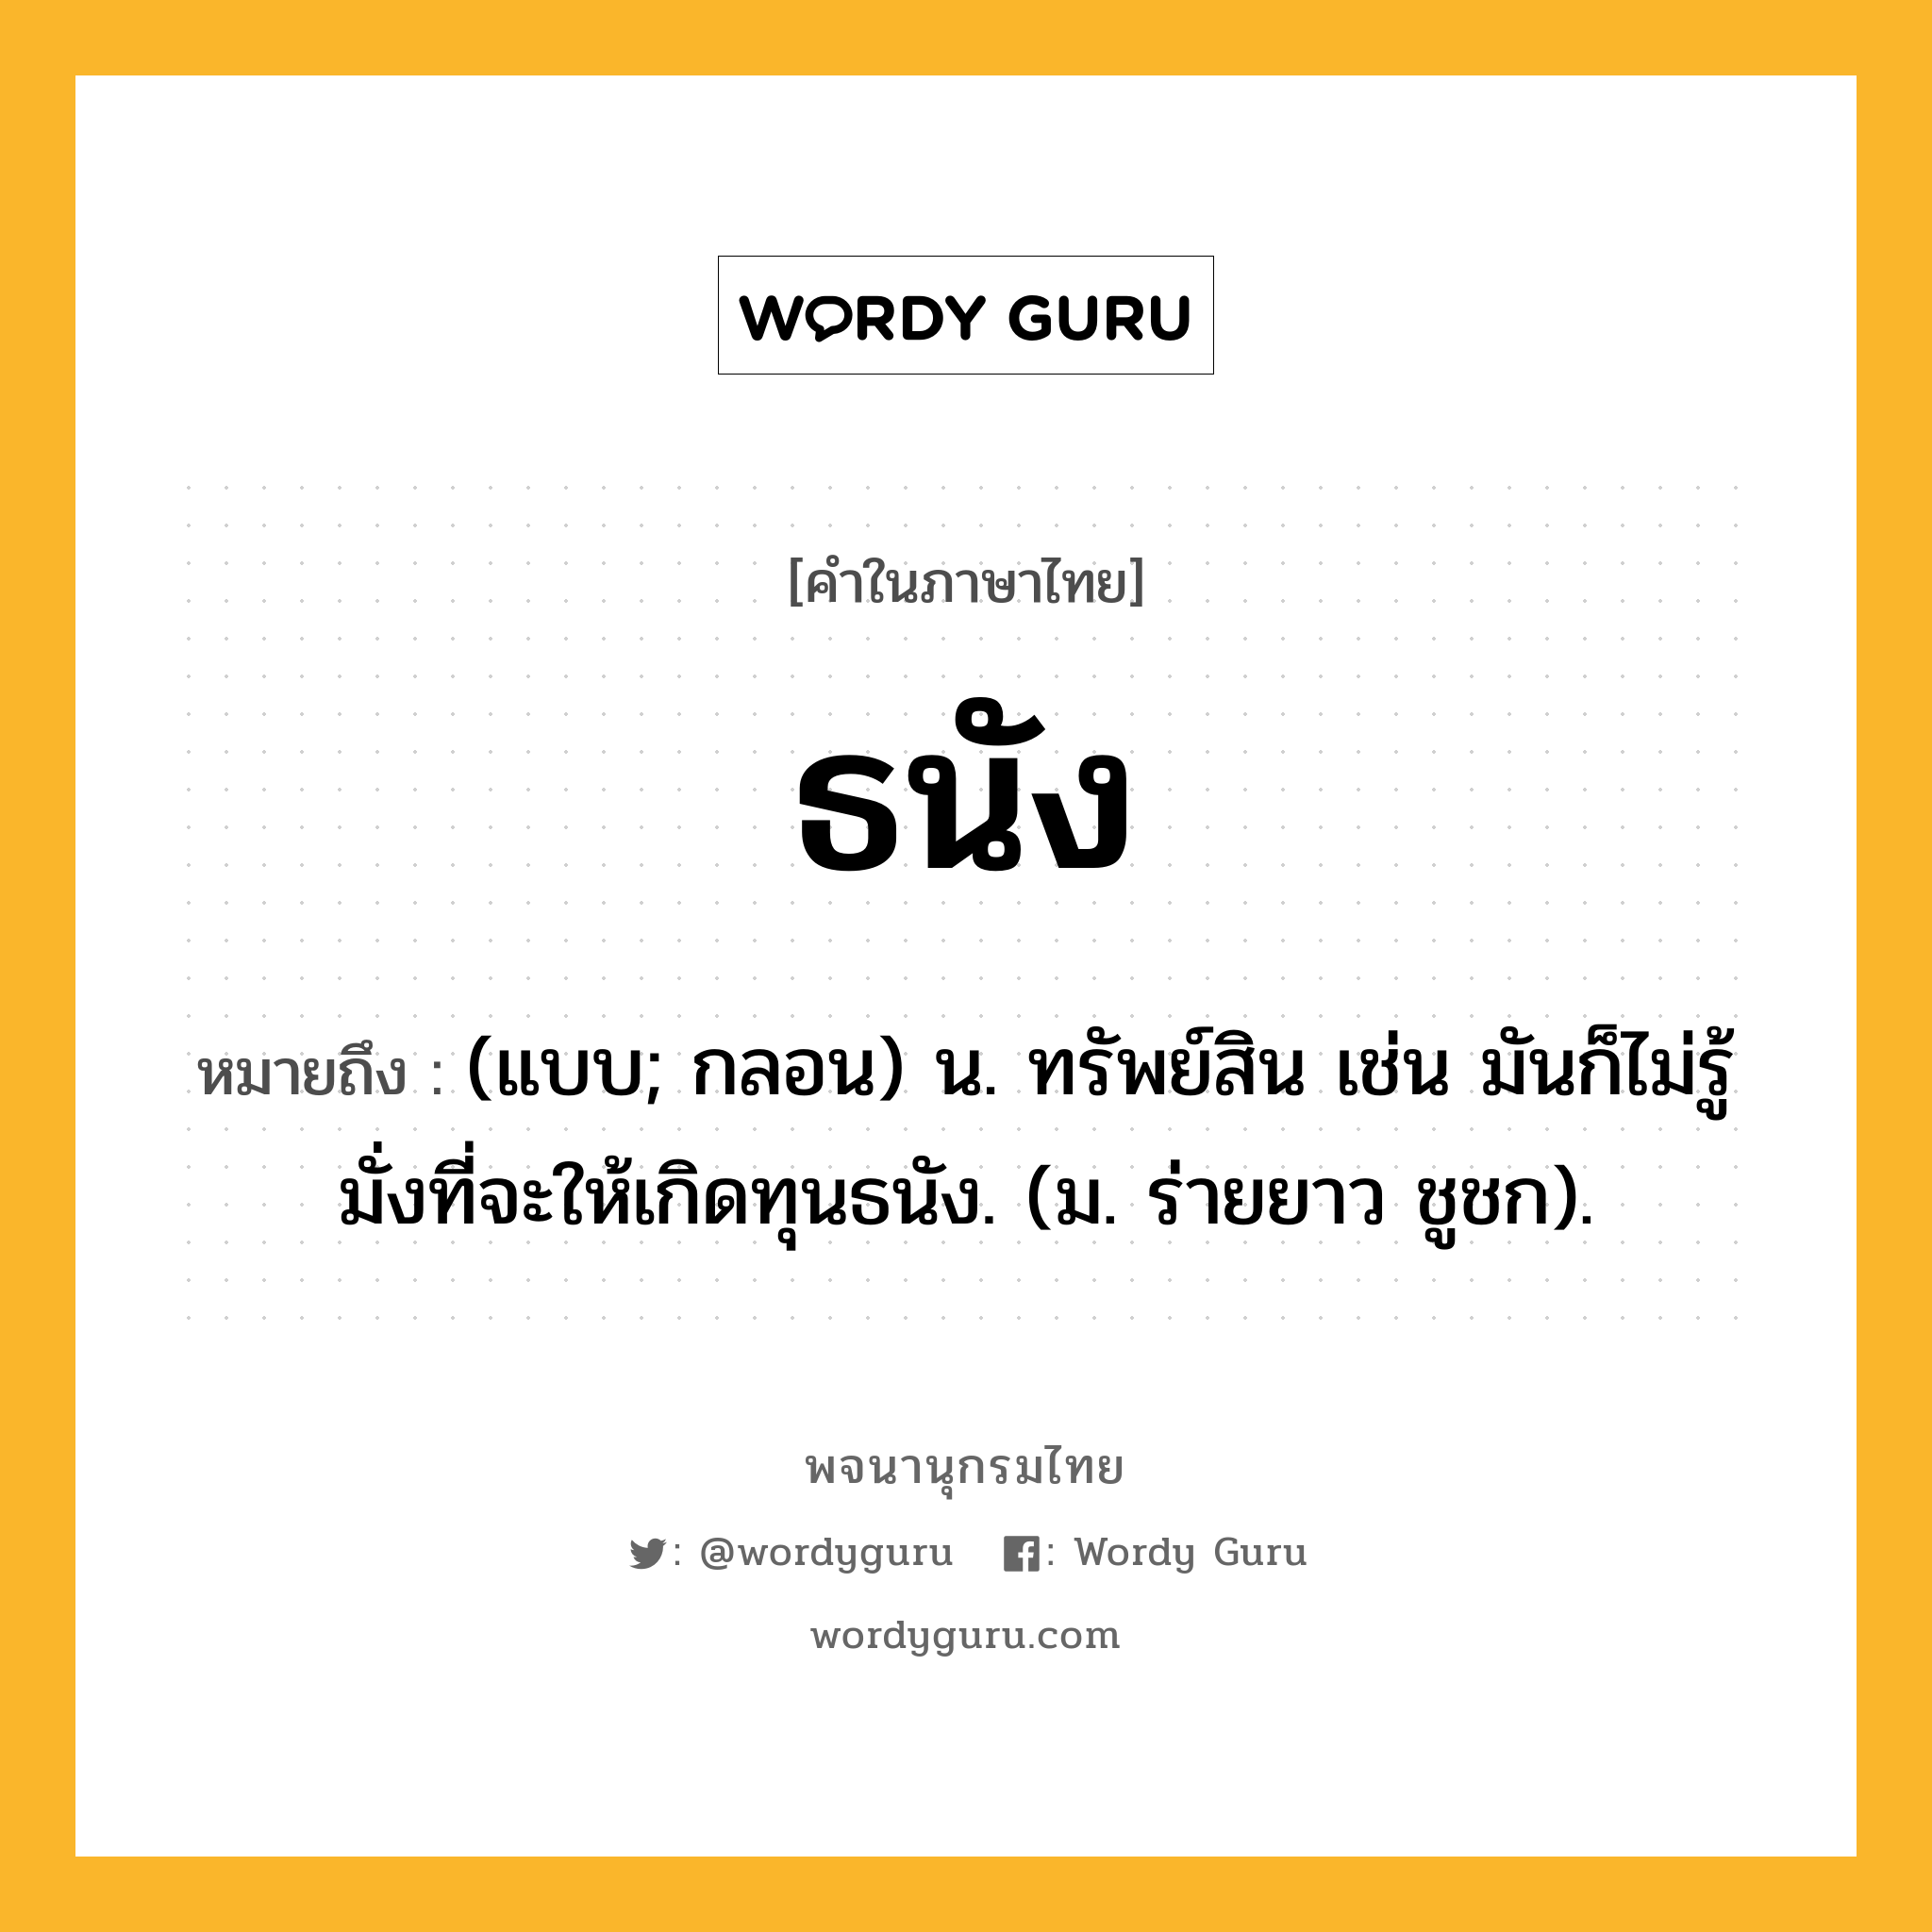 ธนัง ความหมาย หมายถึงอะไร?, คำในภาษาไทย ธนัง หมายถึง (แบบ; กลอน) น. ทรัพย์สิน เช่น มันก็ไม่รู้มั่งที่จะให้เกิดทุนธนัง. (ม. ร่ายยาว ชูชก).